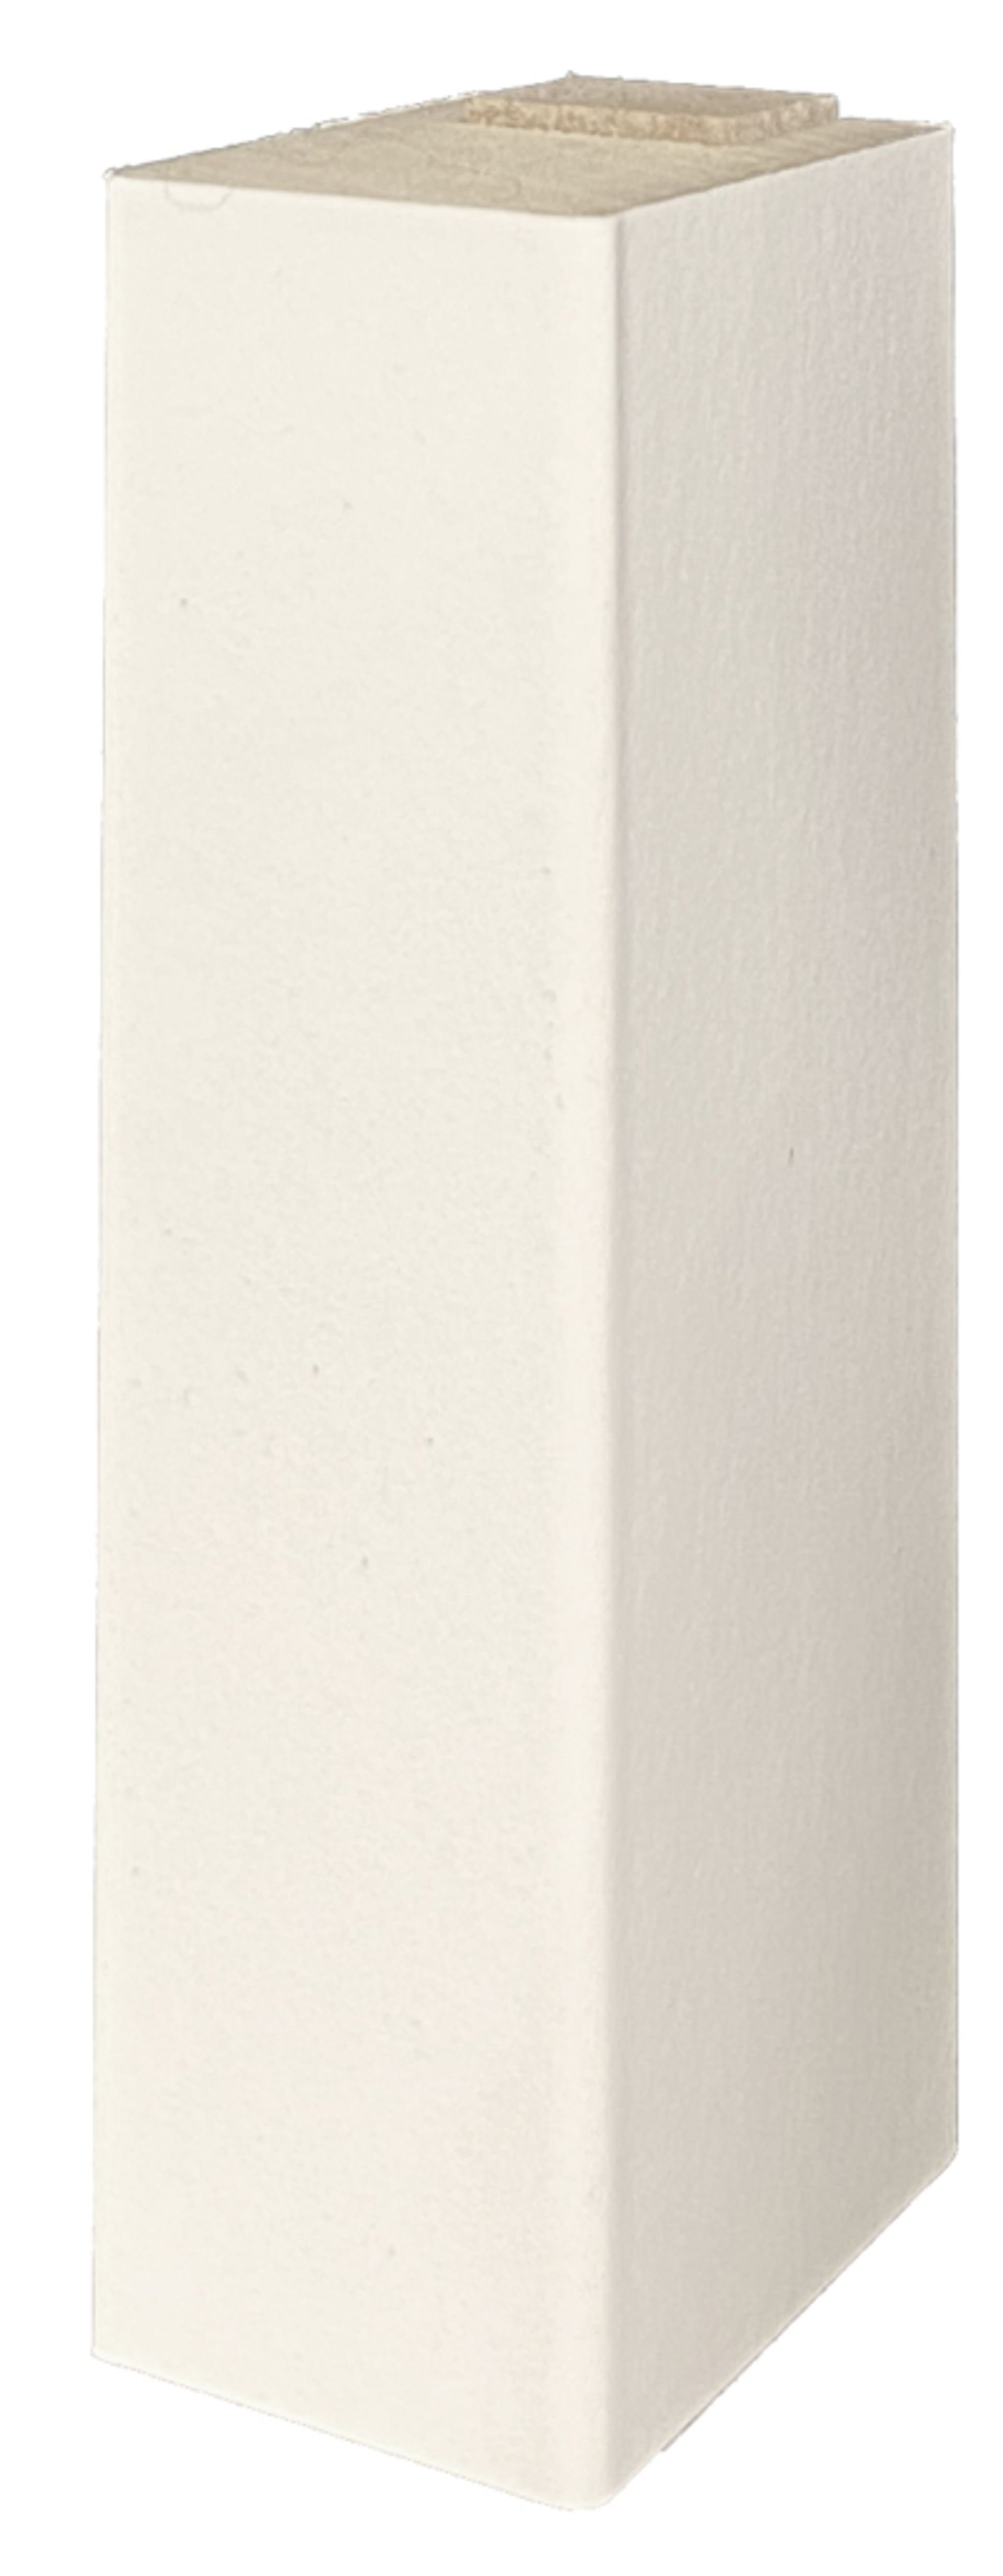 Wand- Akustikpaneel schwarz mit 6 Lamellen Weiß Trapez LW3 V1 B/H 48,4 cm / 275 cm